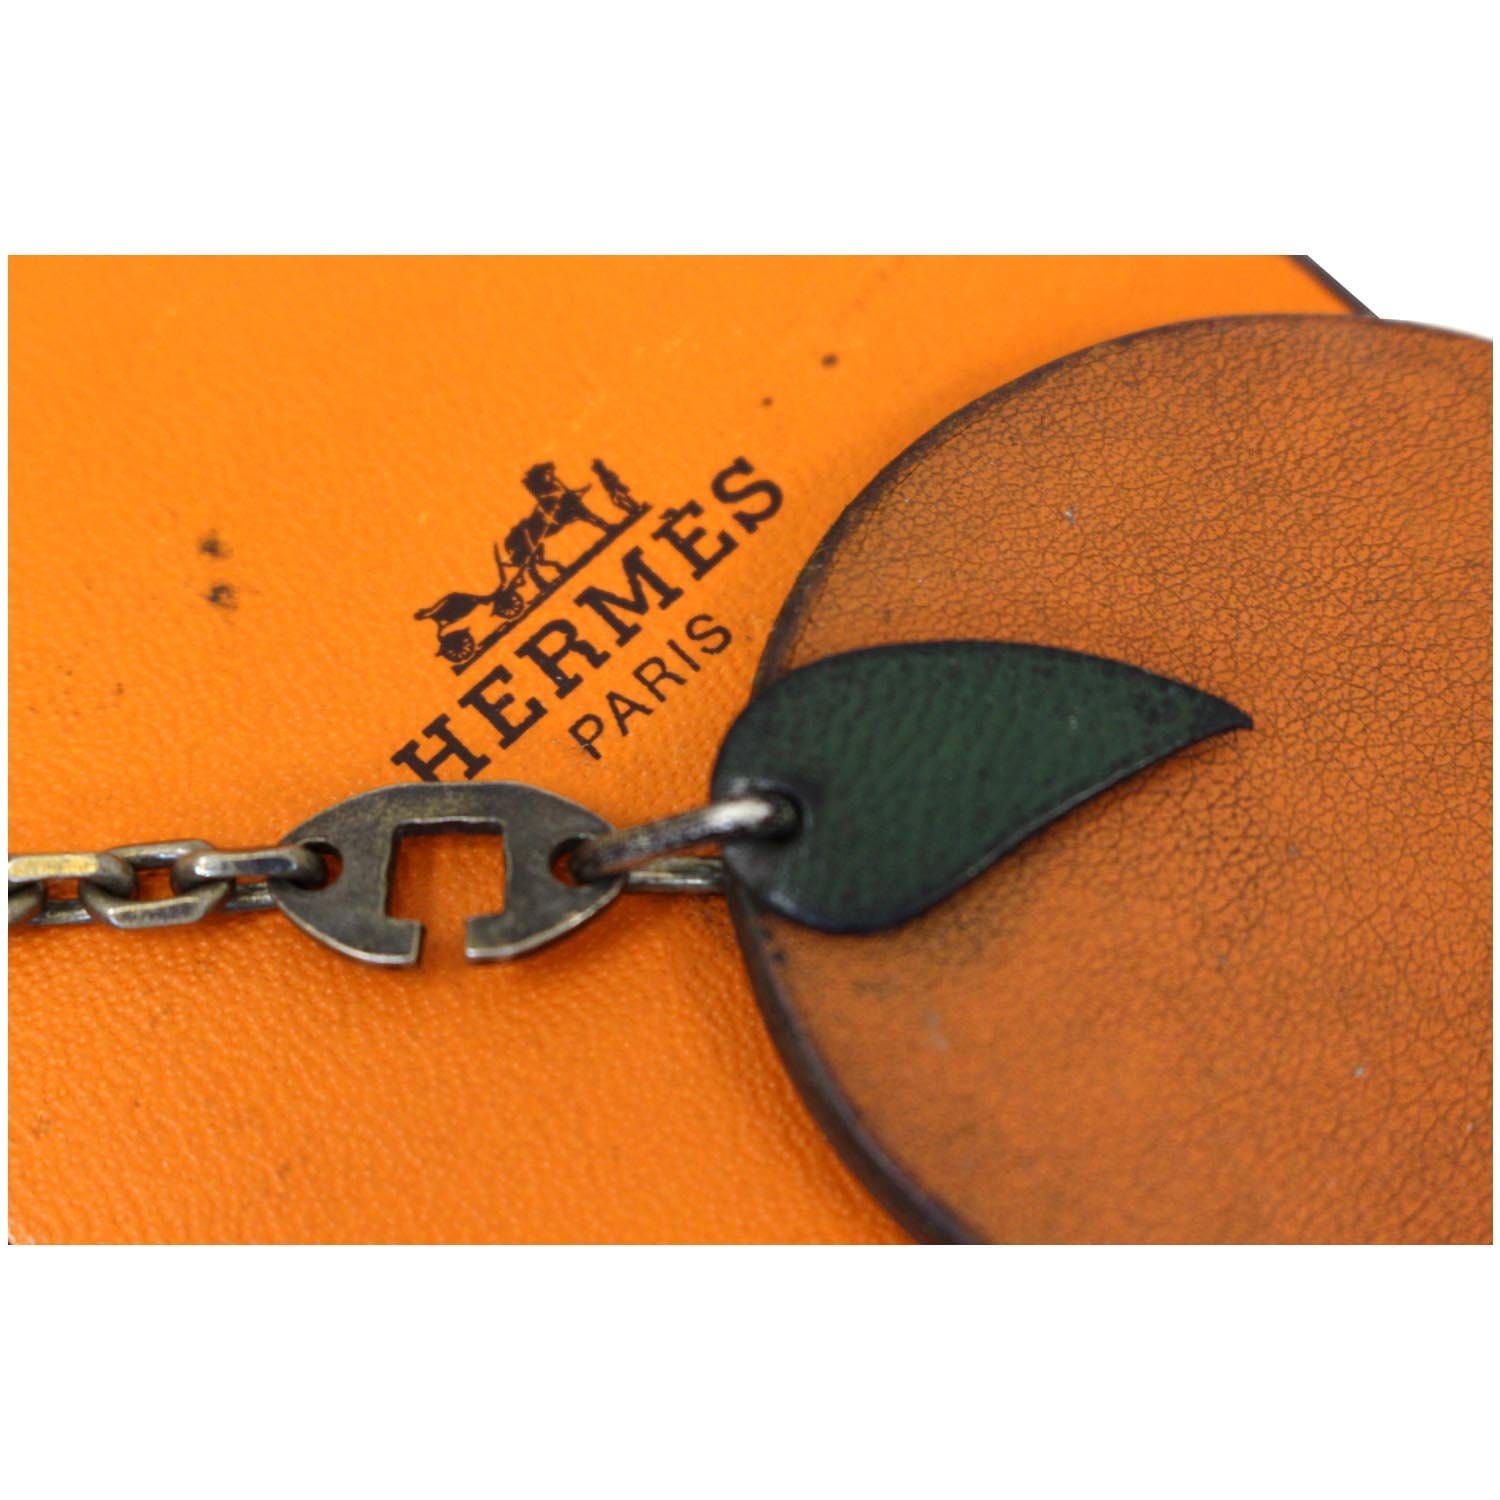 Hermes Orange Shopping Sac Bag Charm Key Chain Pom Pom Carmen